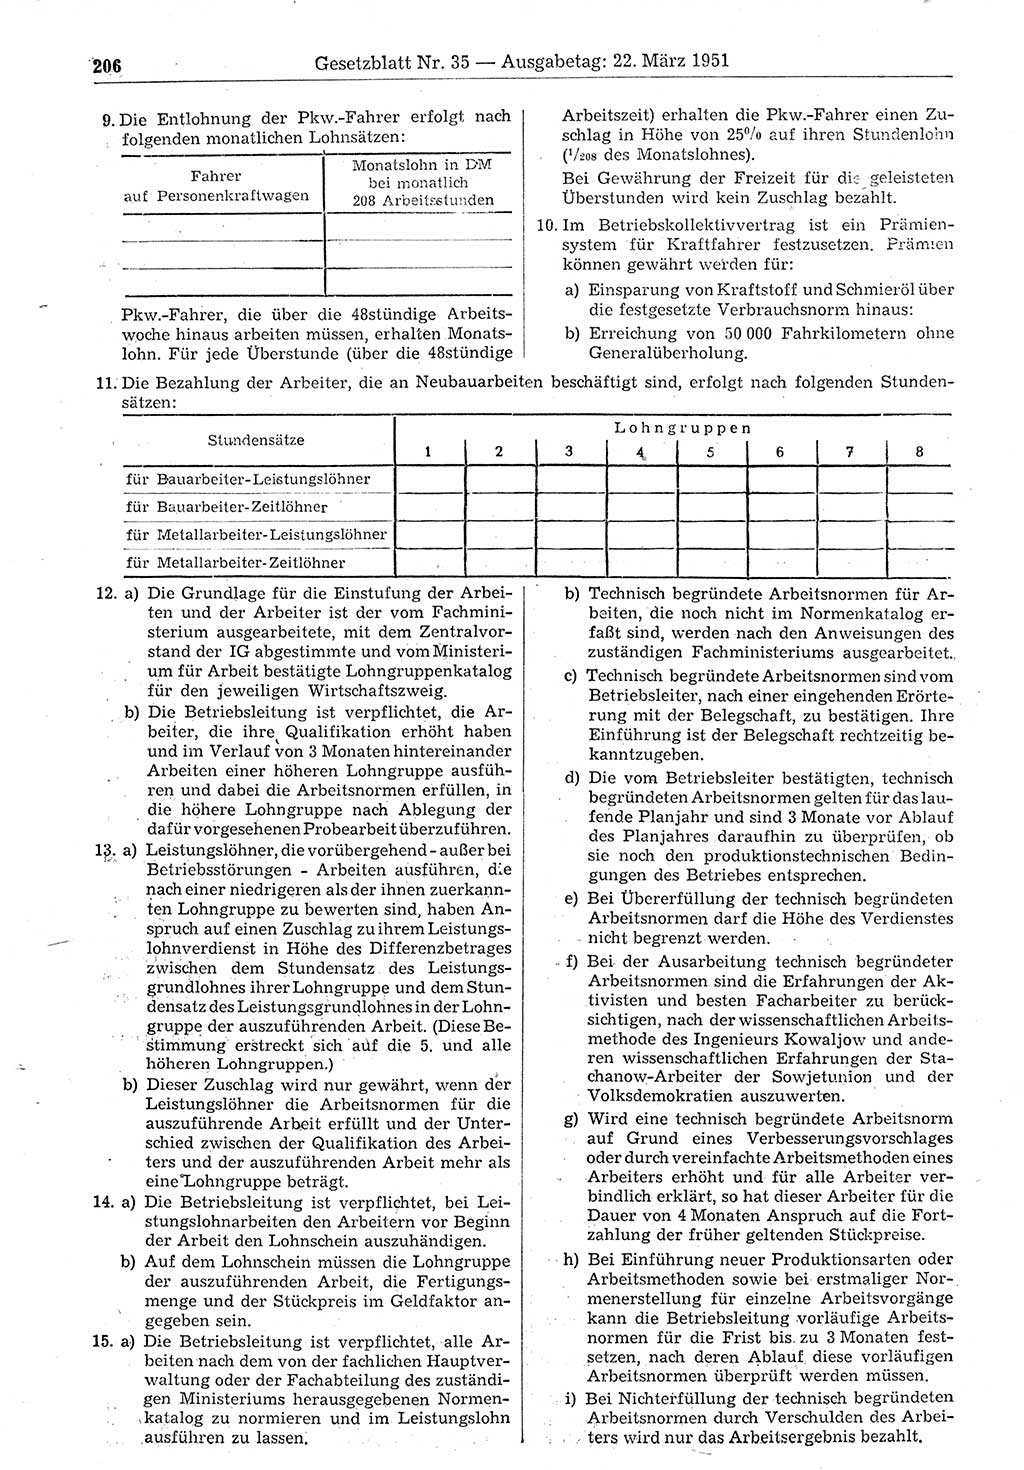 Gesetzblatt (GBl.) der Deutschen Demokratischen Republik (DDR) 1951, Seite 206 (GBl. DDR 1951, S. 206)